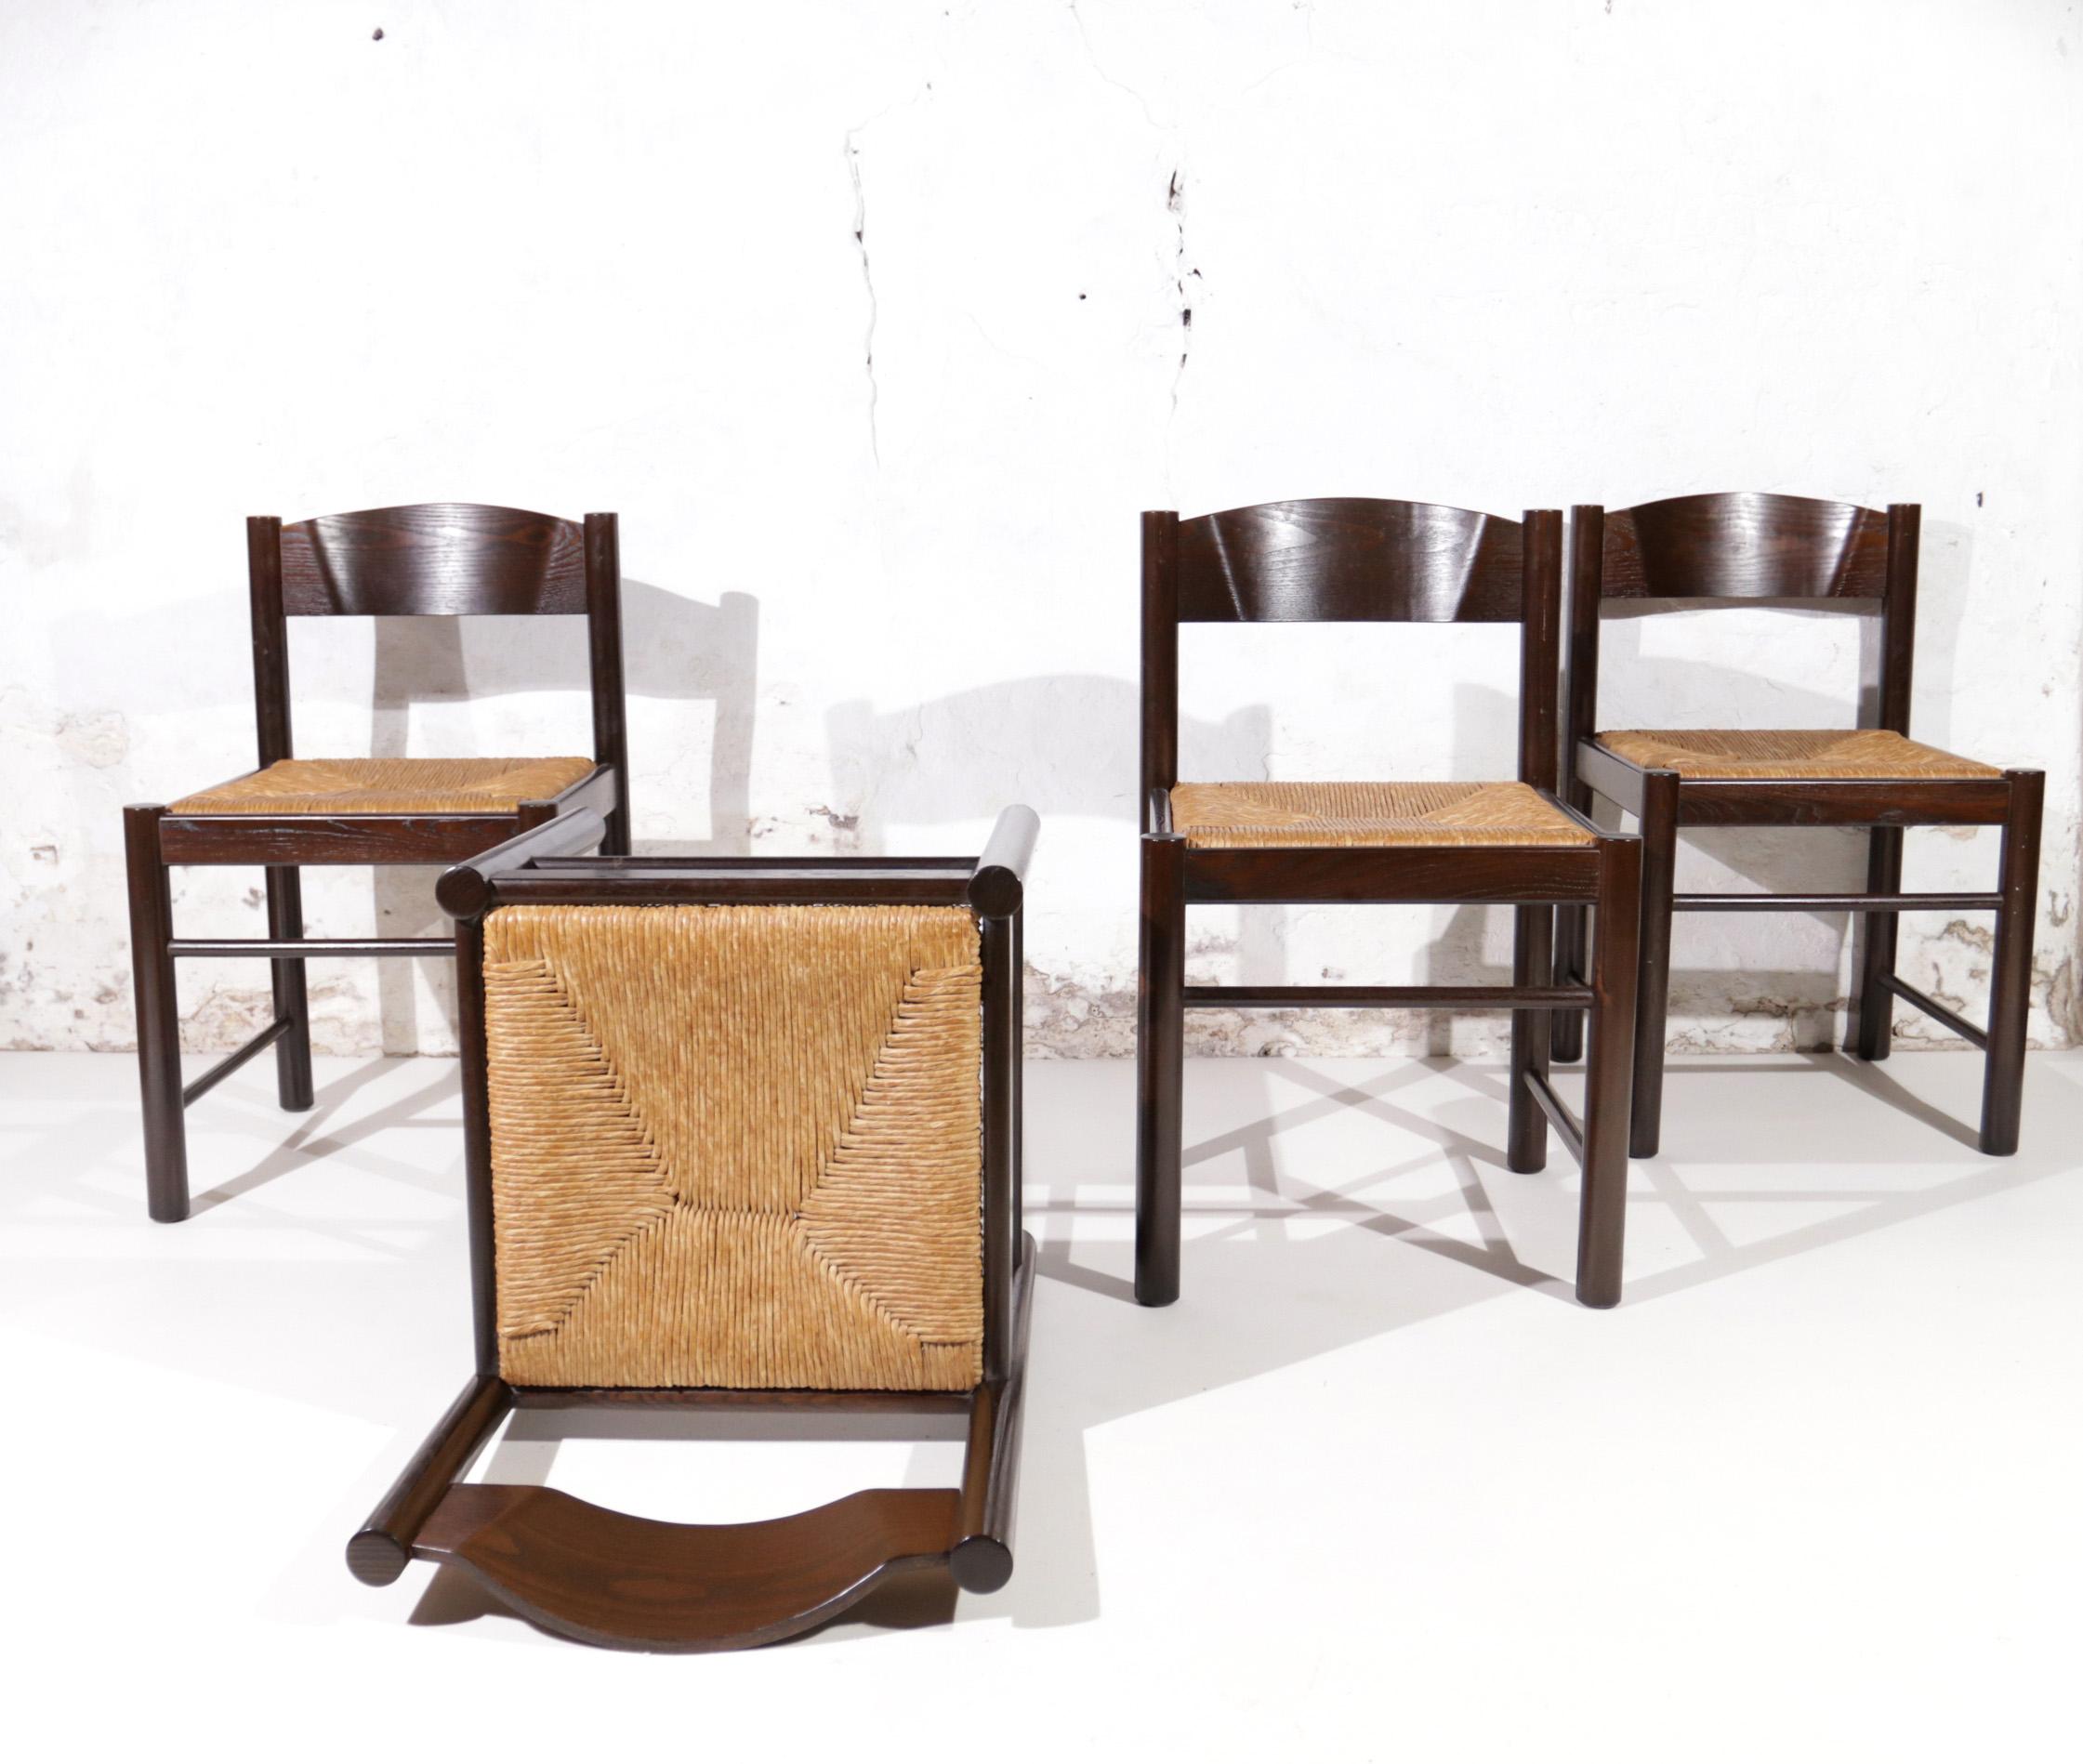 Bel ensemble de 4 chaises de salle à manger à la manière de Charlotte Perriand.
Chaises en bois massif, revêtues de brun foncé, avec assise en cannage/jonc.
